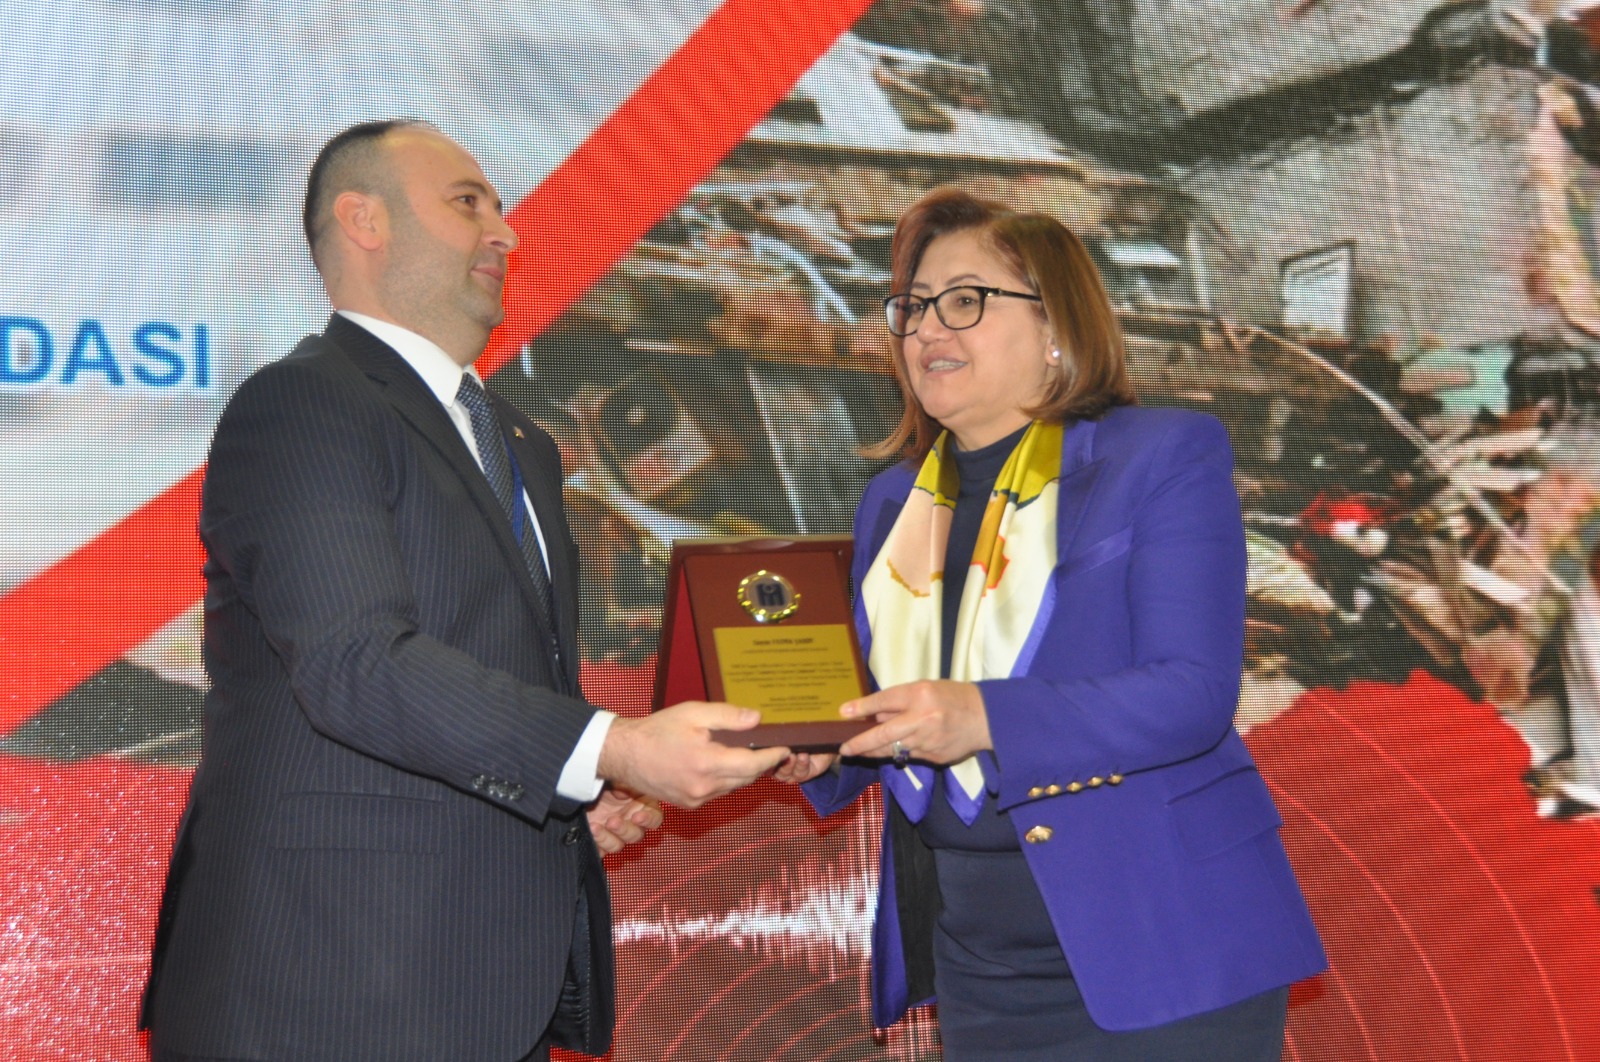 Büyükşehir Belediye Başkanı Şahin, İMO tarafından düzenlenen Gaziantep Deprem Çalıştayında konuştu: